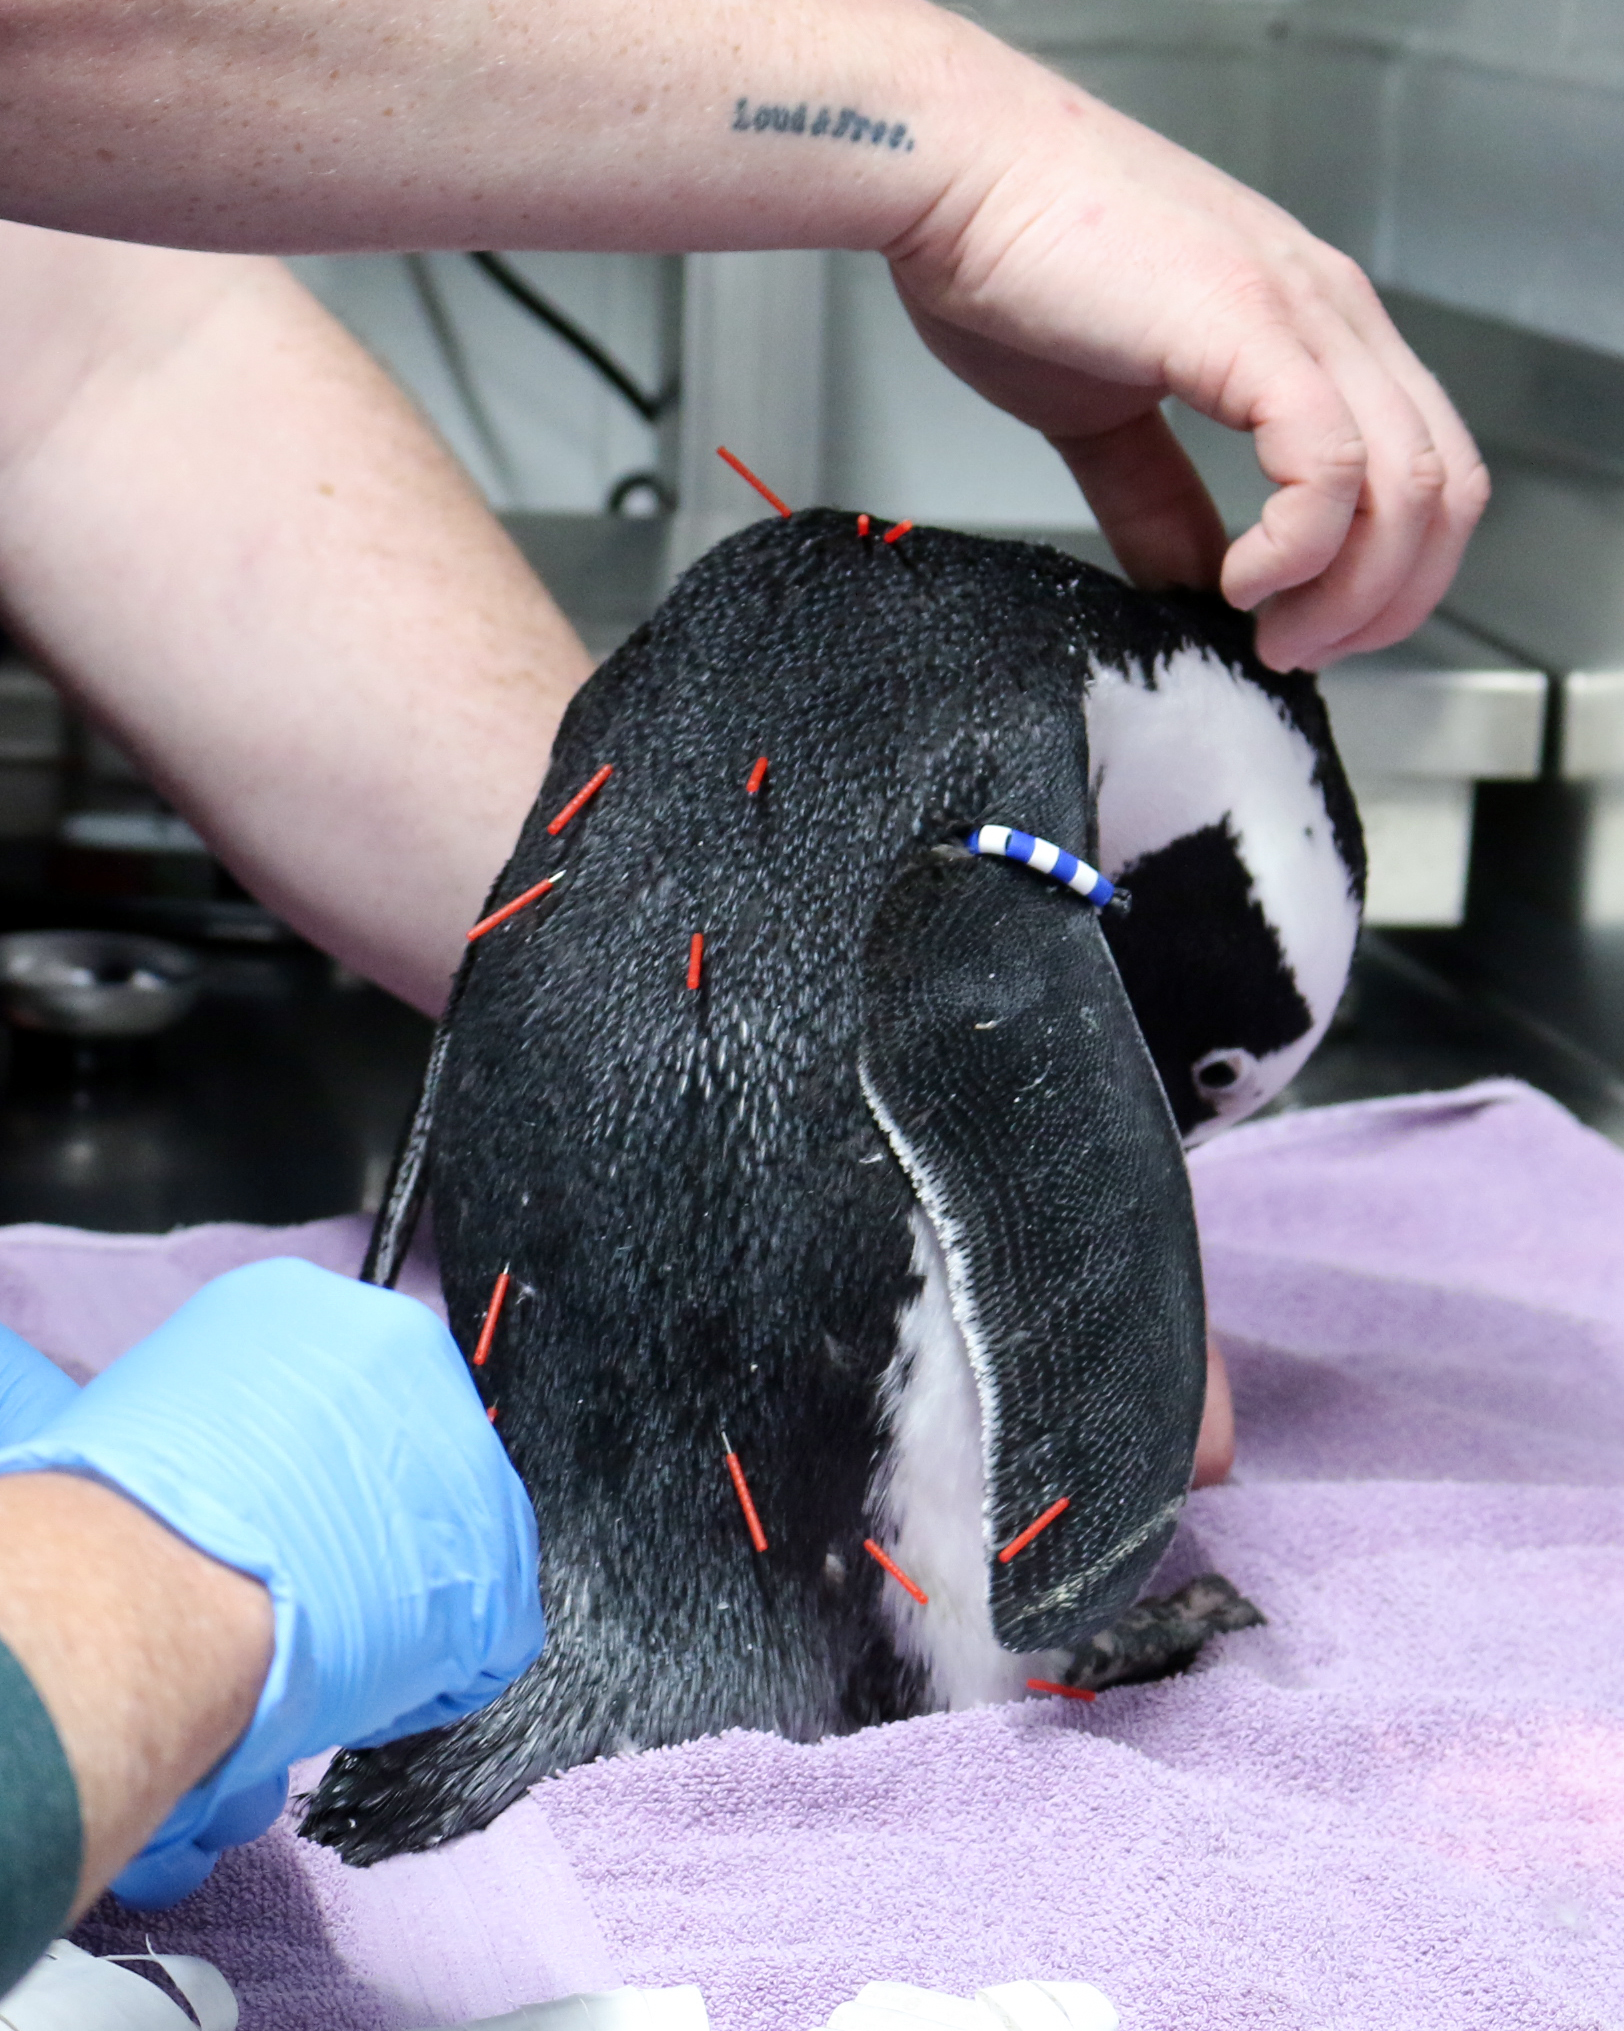 Peeko the penguin receiving acupuncture